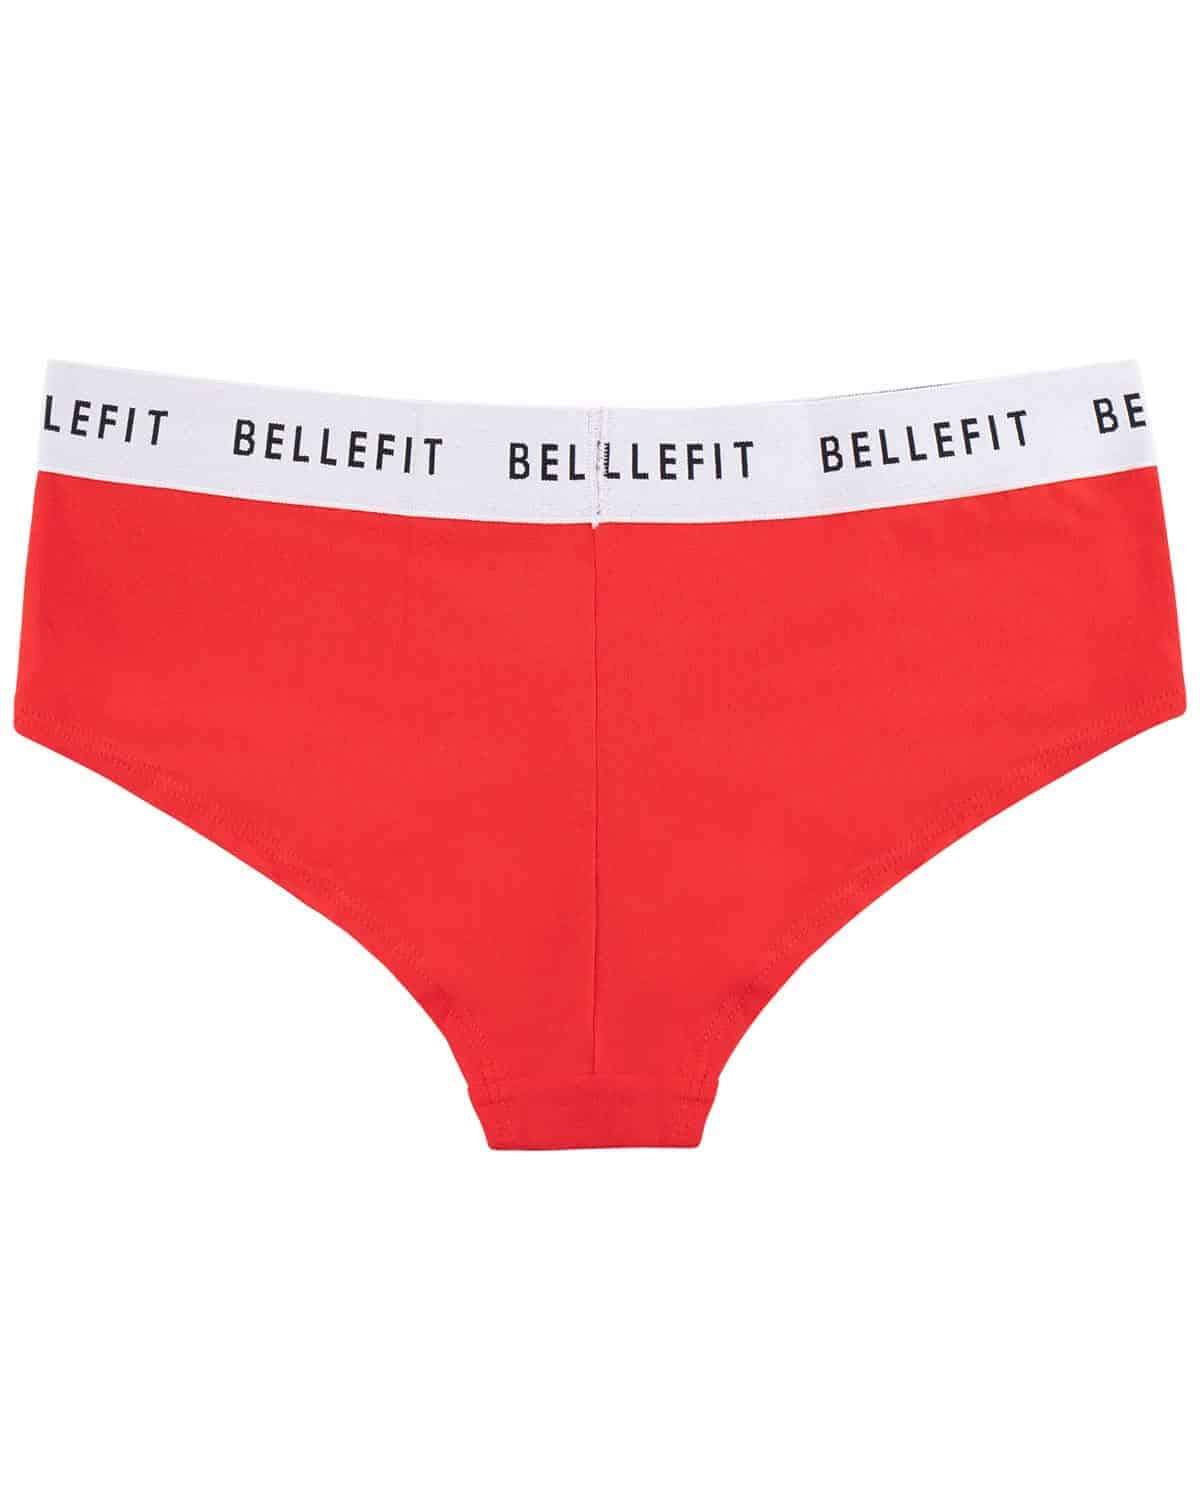 https://www.bellefit.com/cdn/shop/products/bellefit-cheeky-panty-fs-2.jpg?v=1590150725